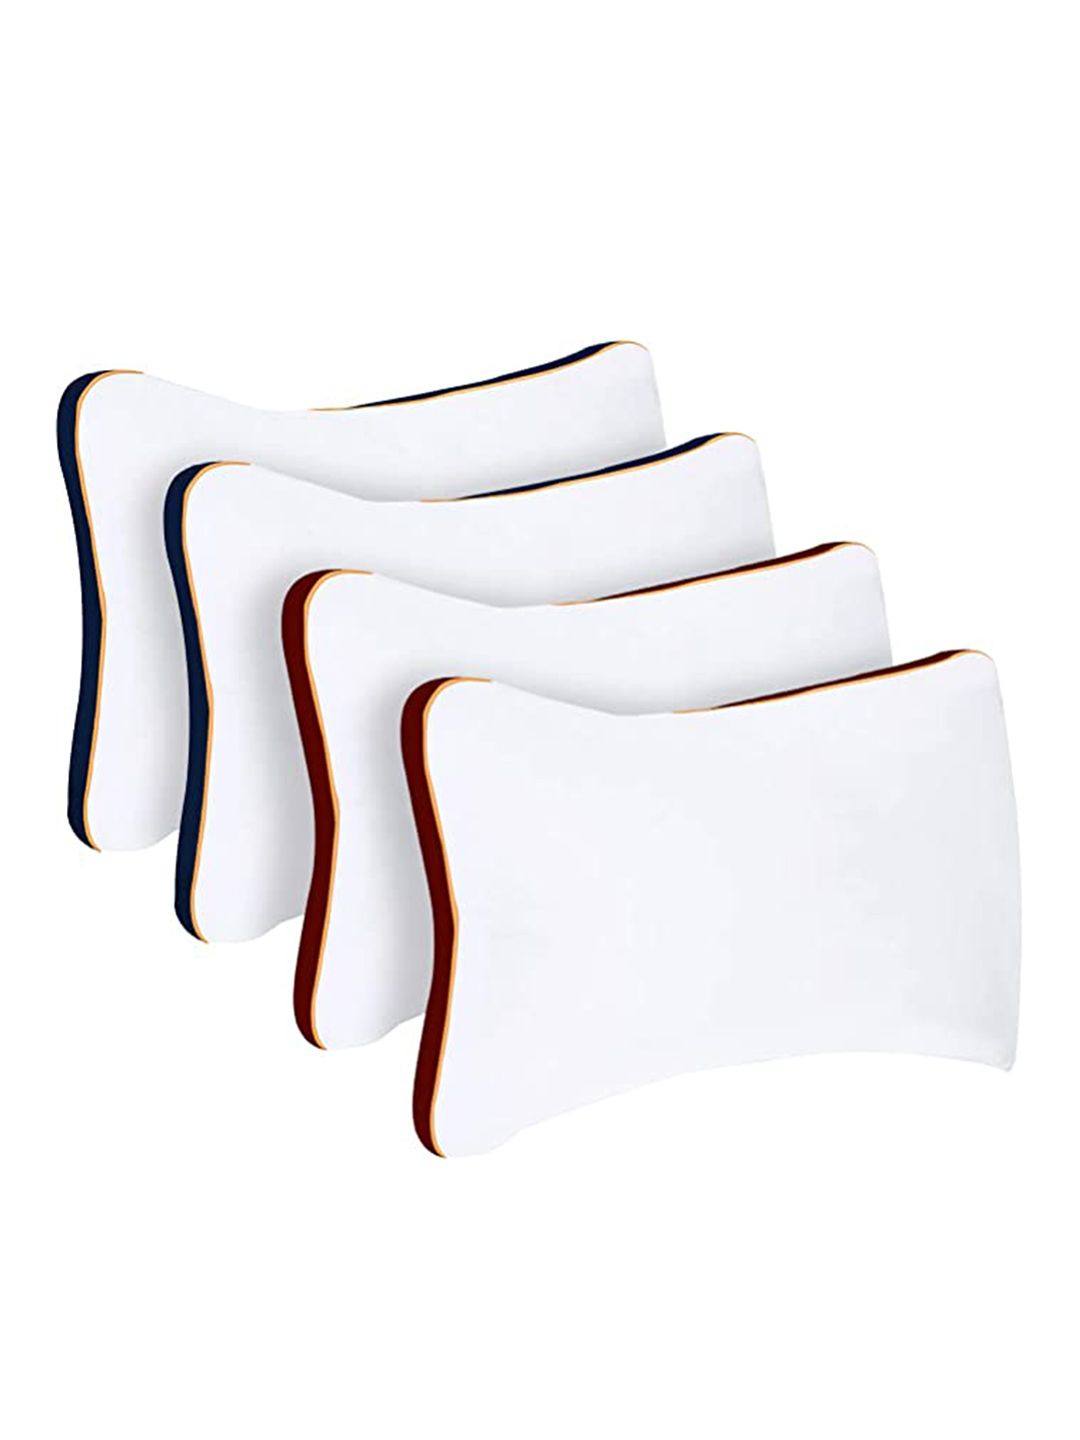 Sleepsia Set Of 4 White & Blue Solid Cotton Pillows Price in India